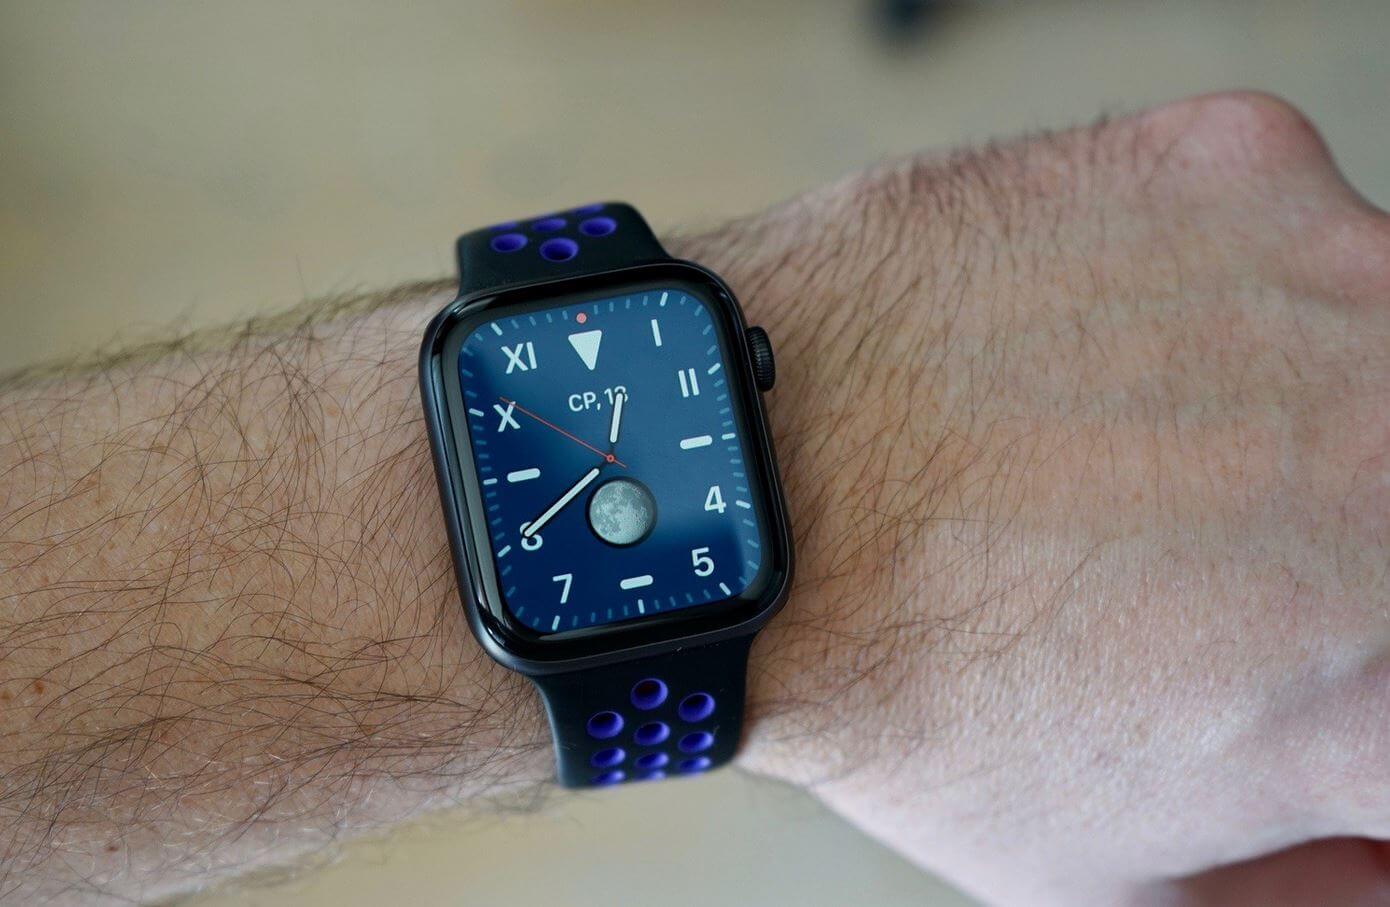 Циферблаты watch 3 pro. Циферблаты Apple watch Ultra. Циферблат Apple watch 7. Красивые циферблаты для Apple watch 7. Циферблат АПЛ вотч 5.